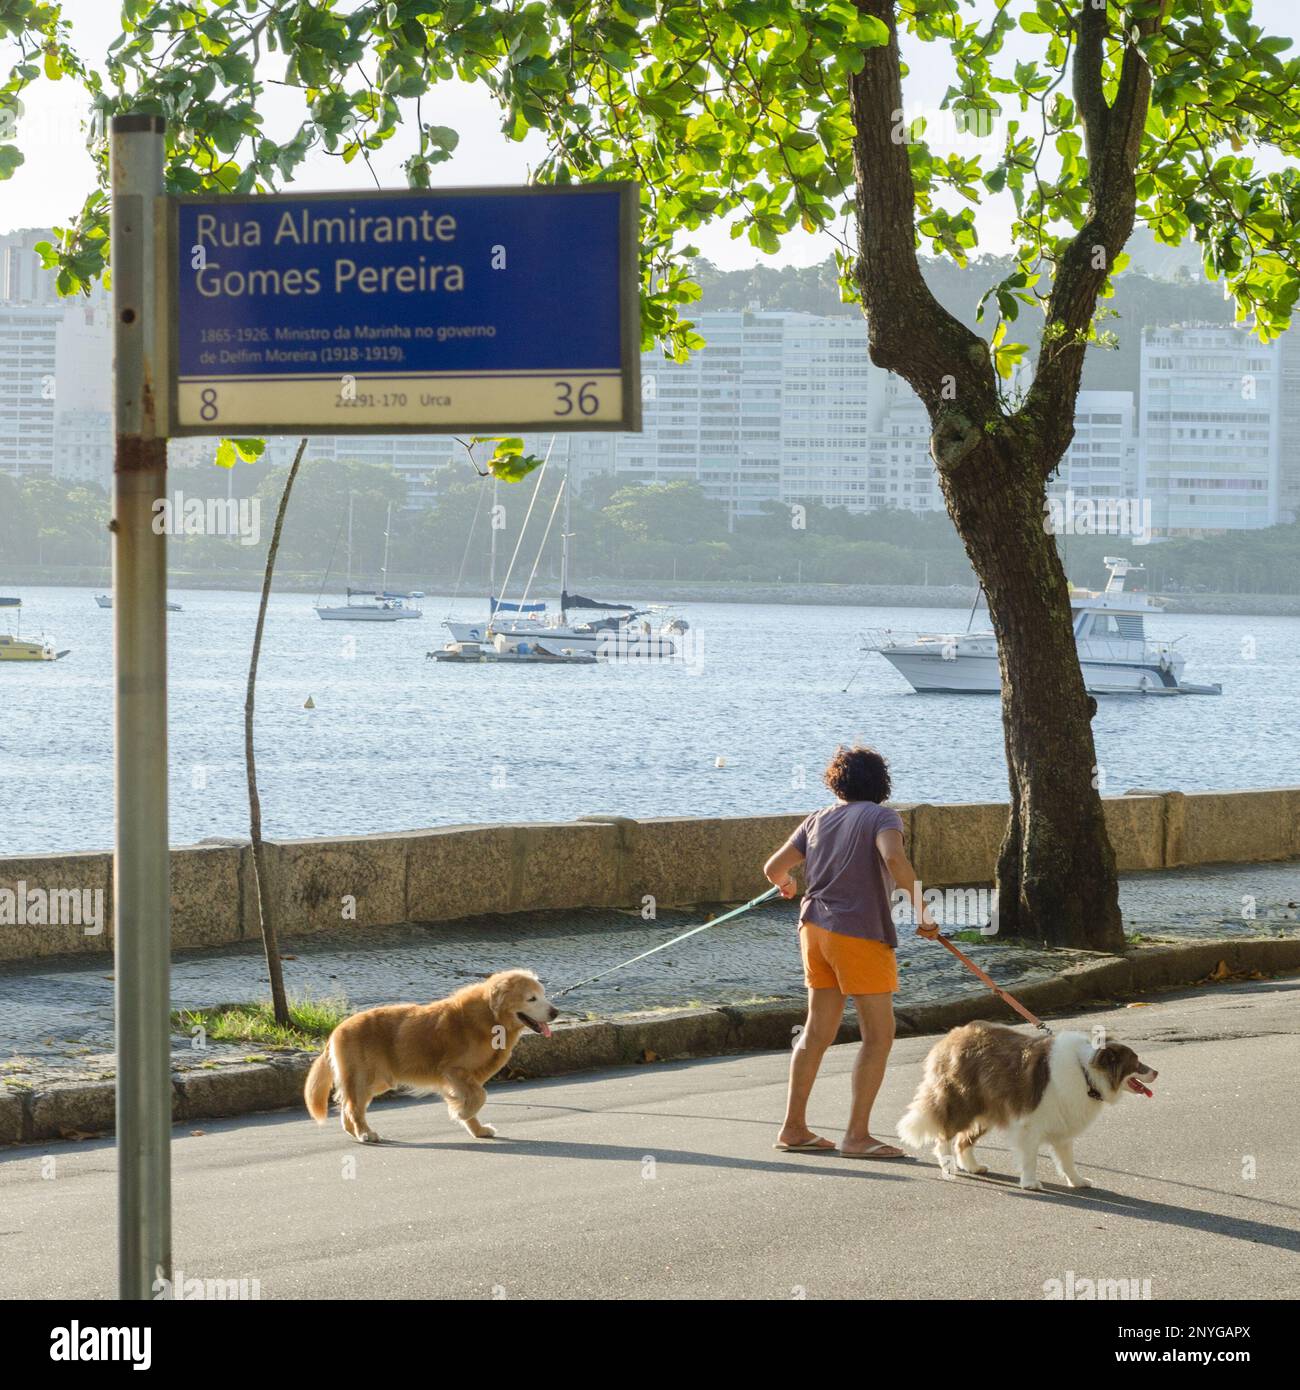 Woman walking two dogs in Urca, Rio de Janeiro, Brazil Stock Photo